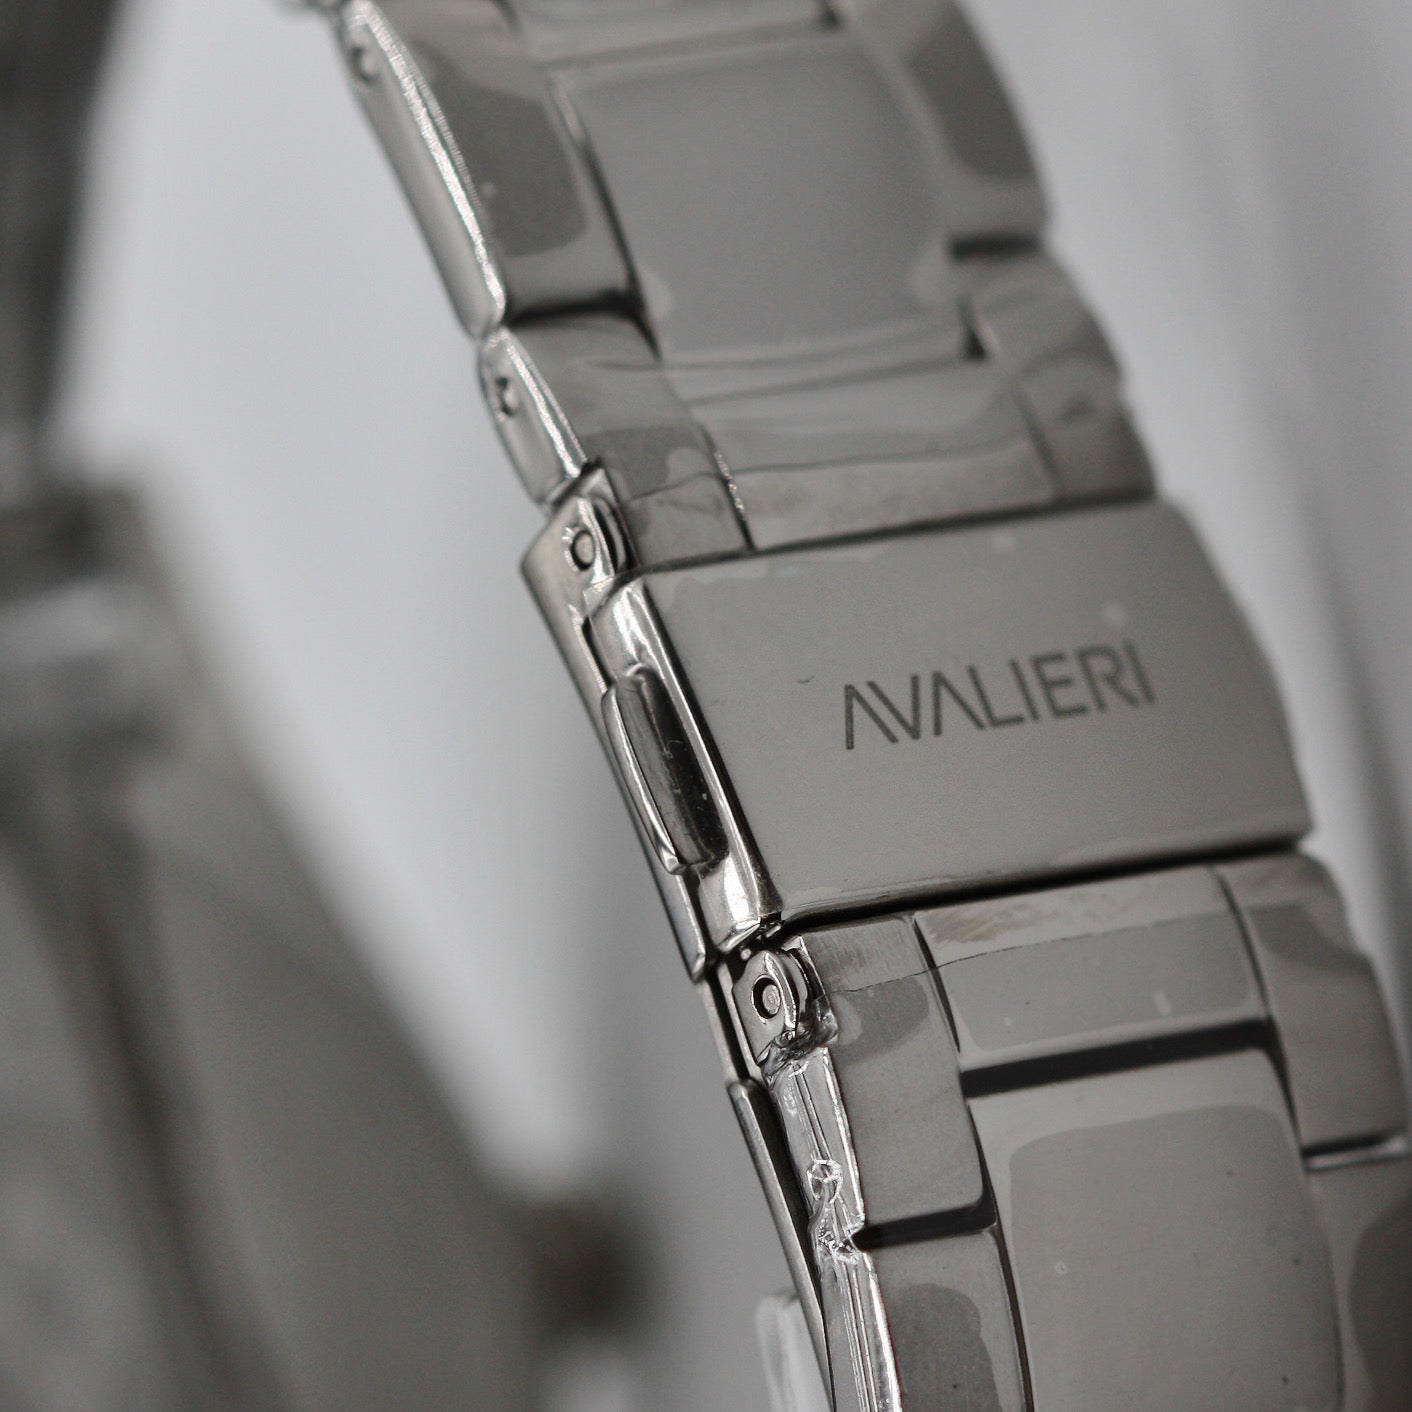 Avalieri Men's Quartz Blue Dial Watch - AV-2584B